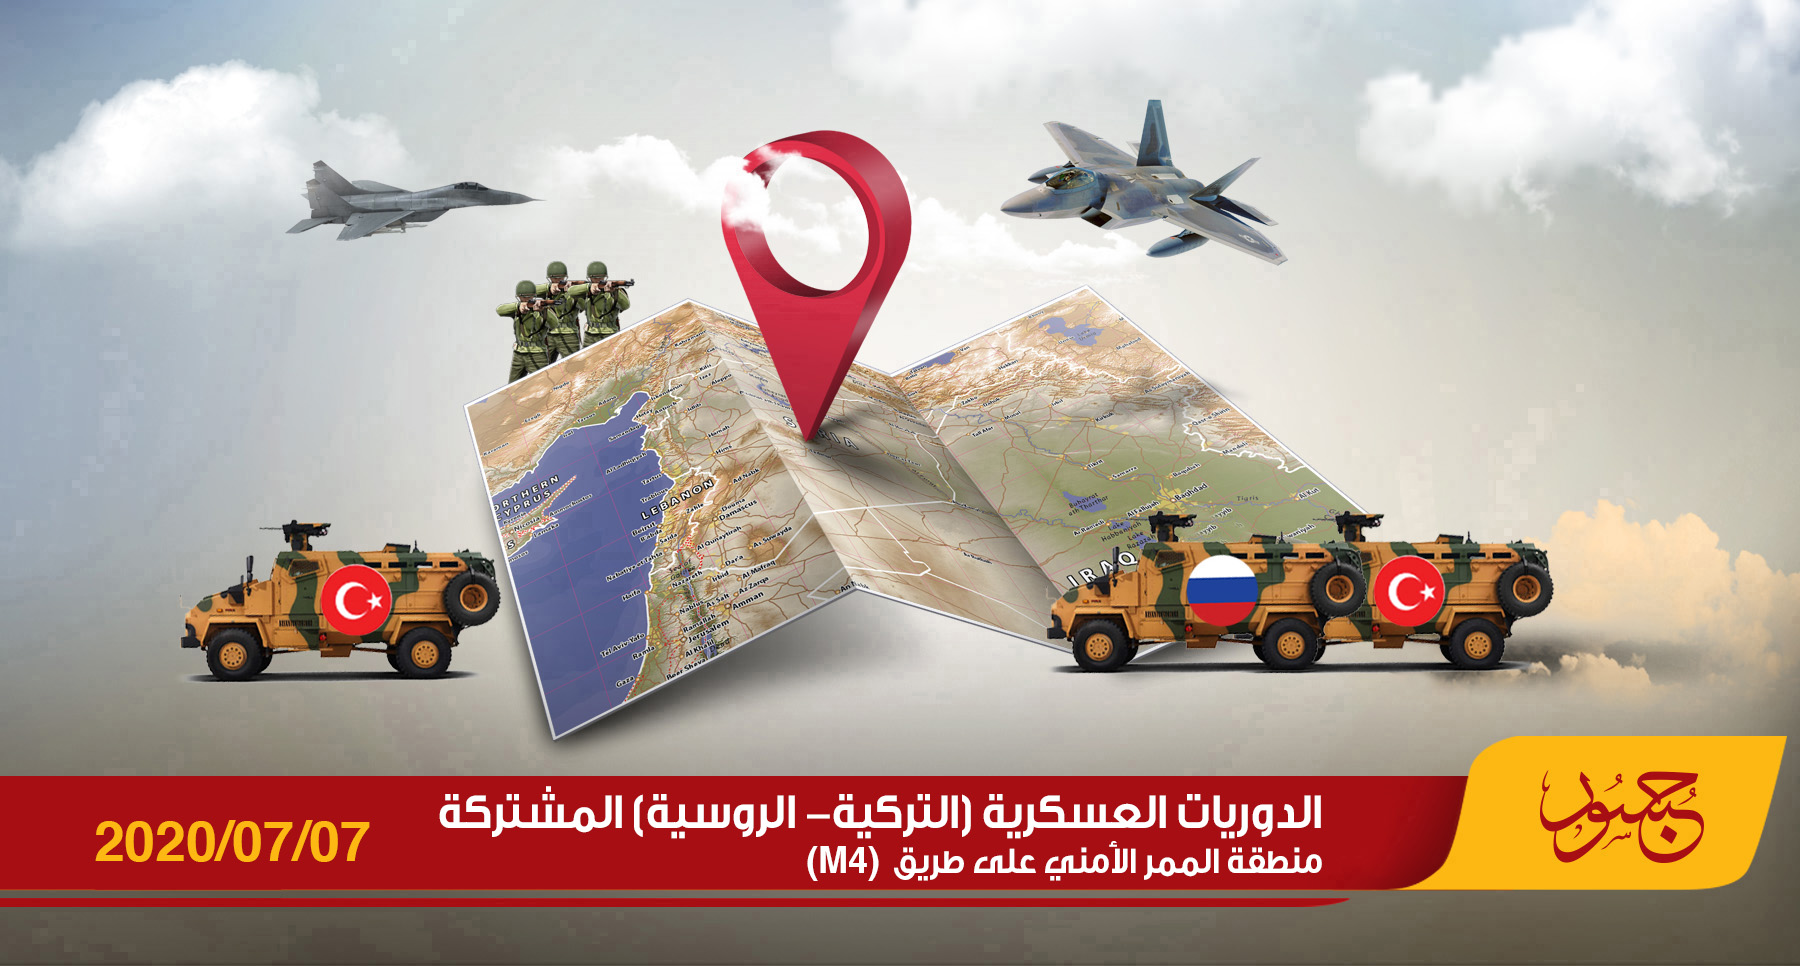 خريطة الدوريات العسكرية التركية - الروسية المشتركة